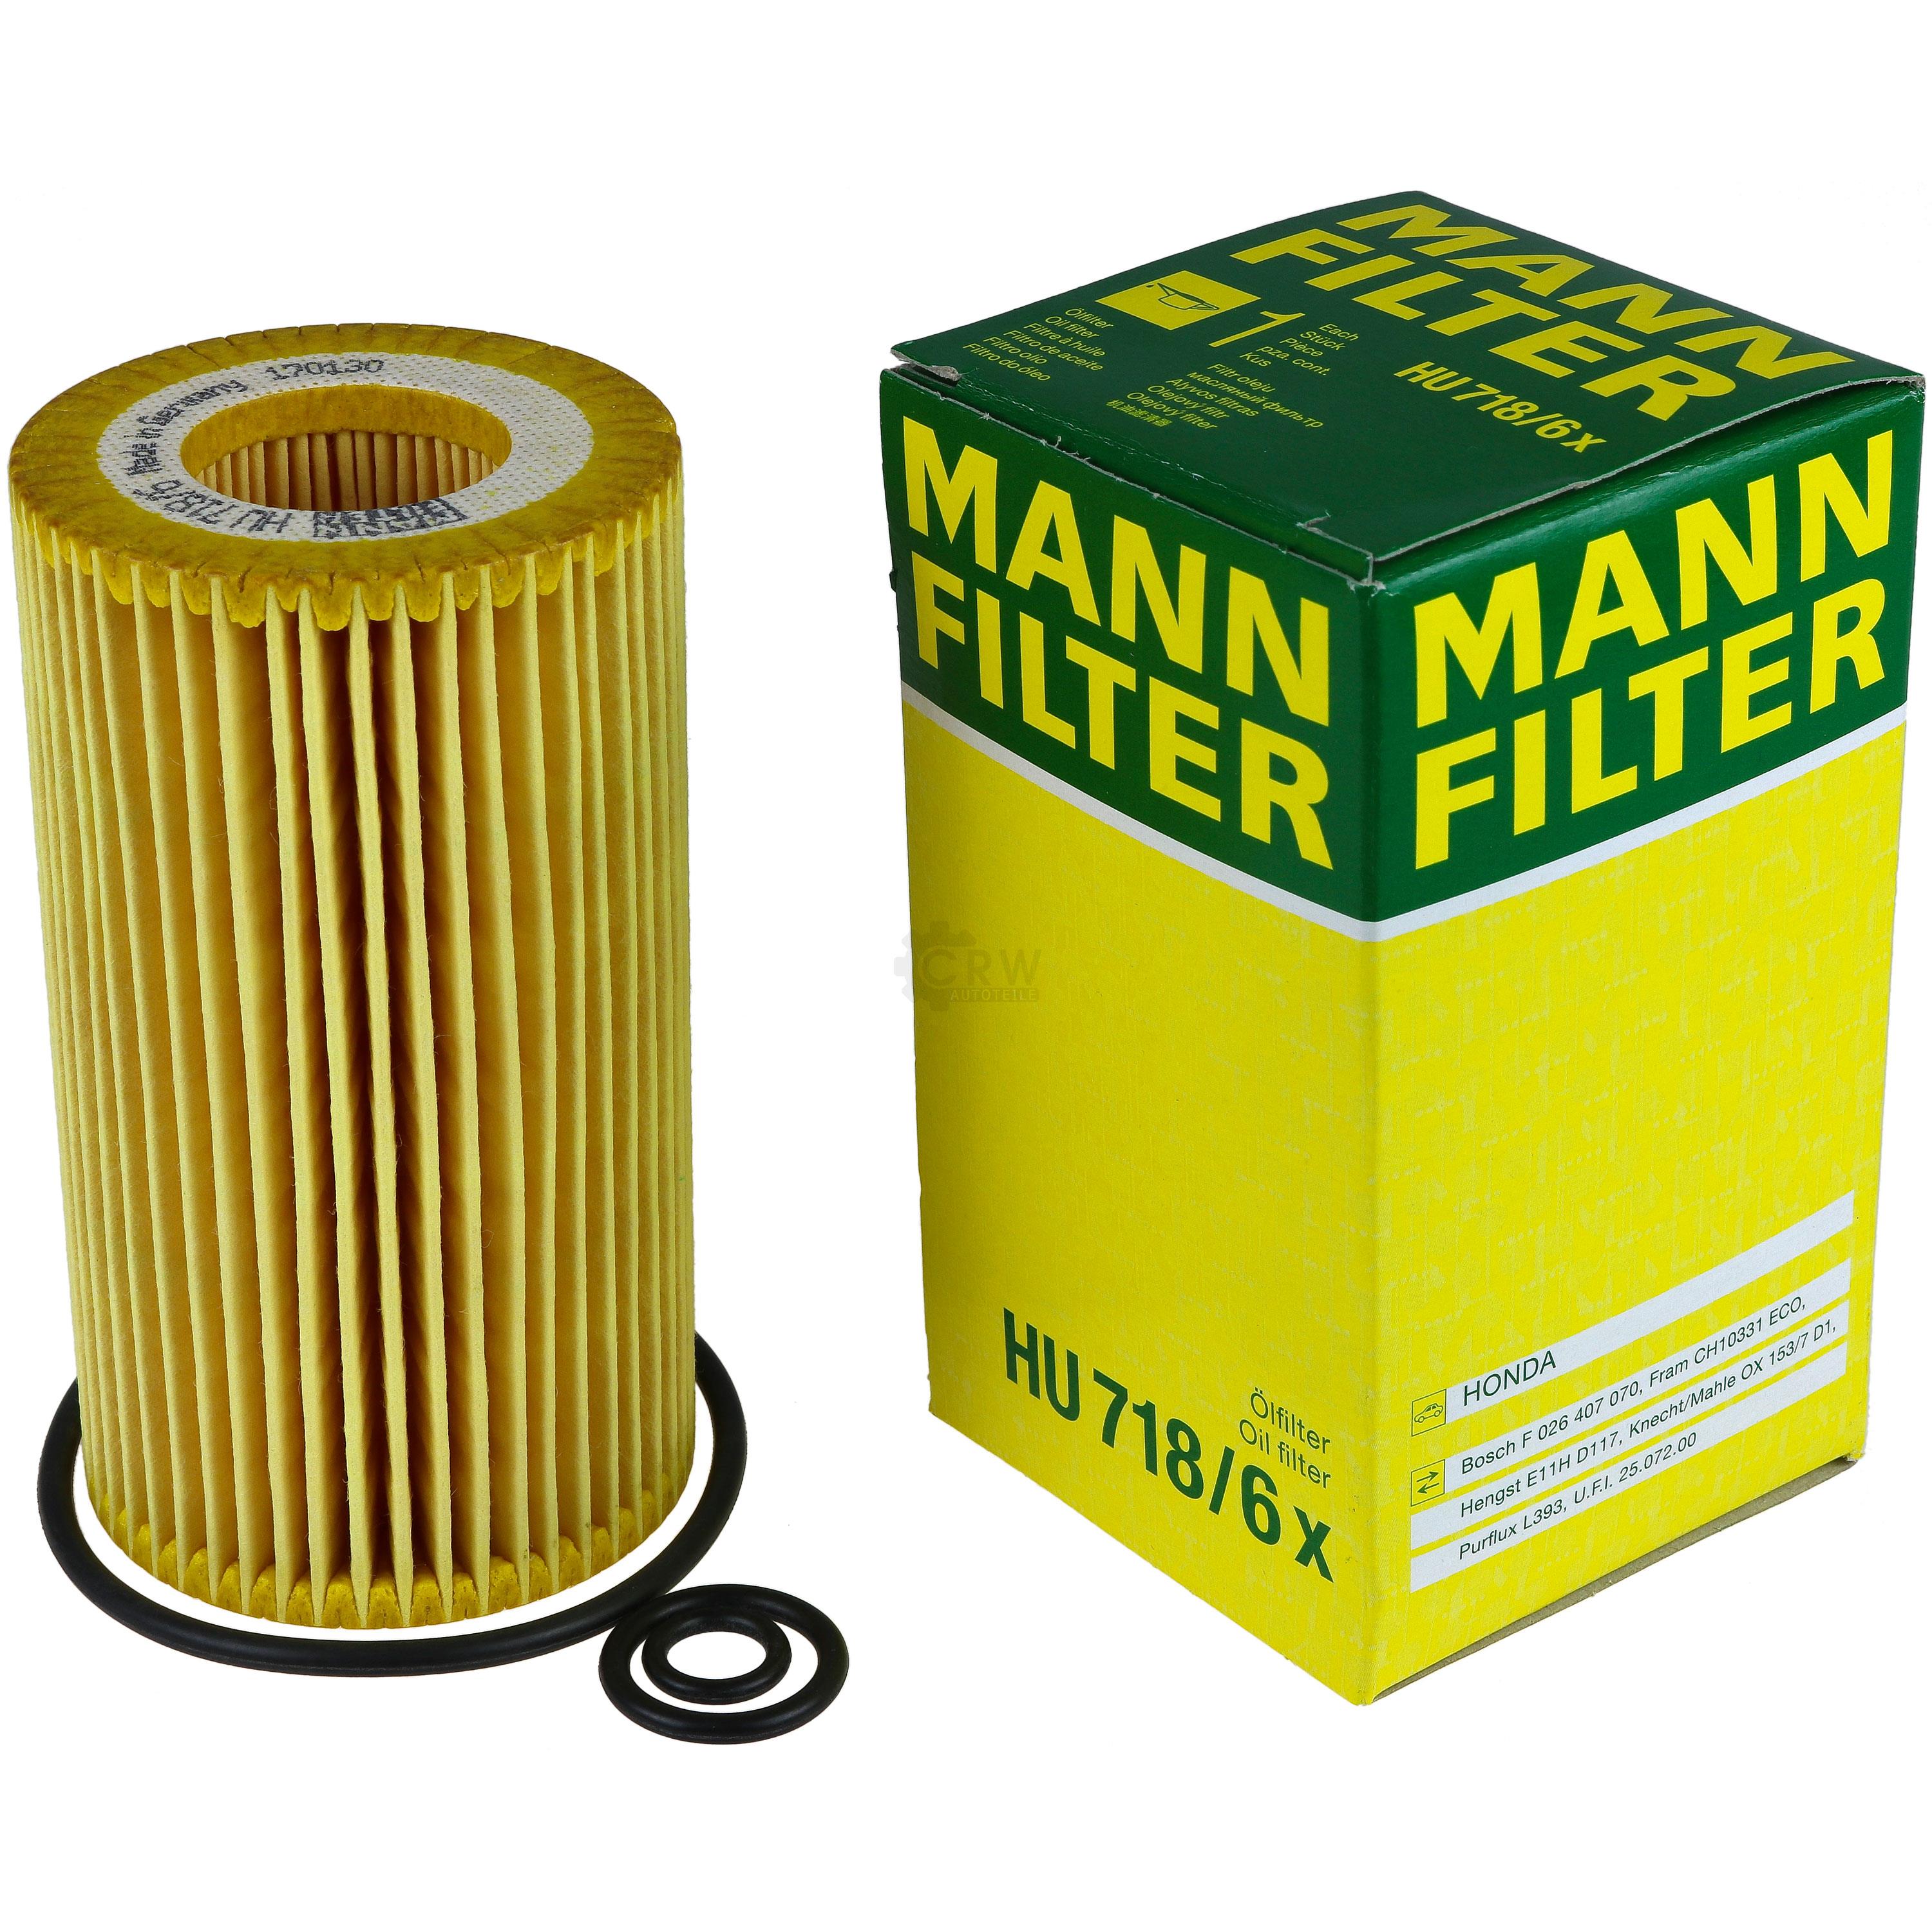 MANN-FILTER Ölfilter HU 718/6 x Oil Filter